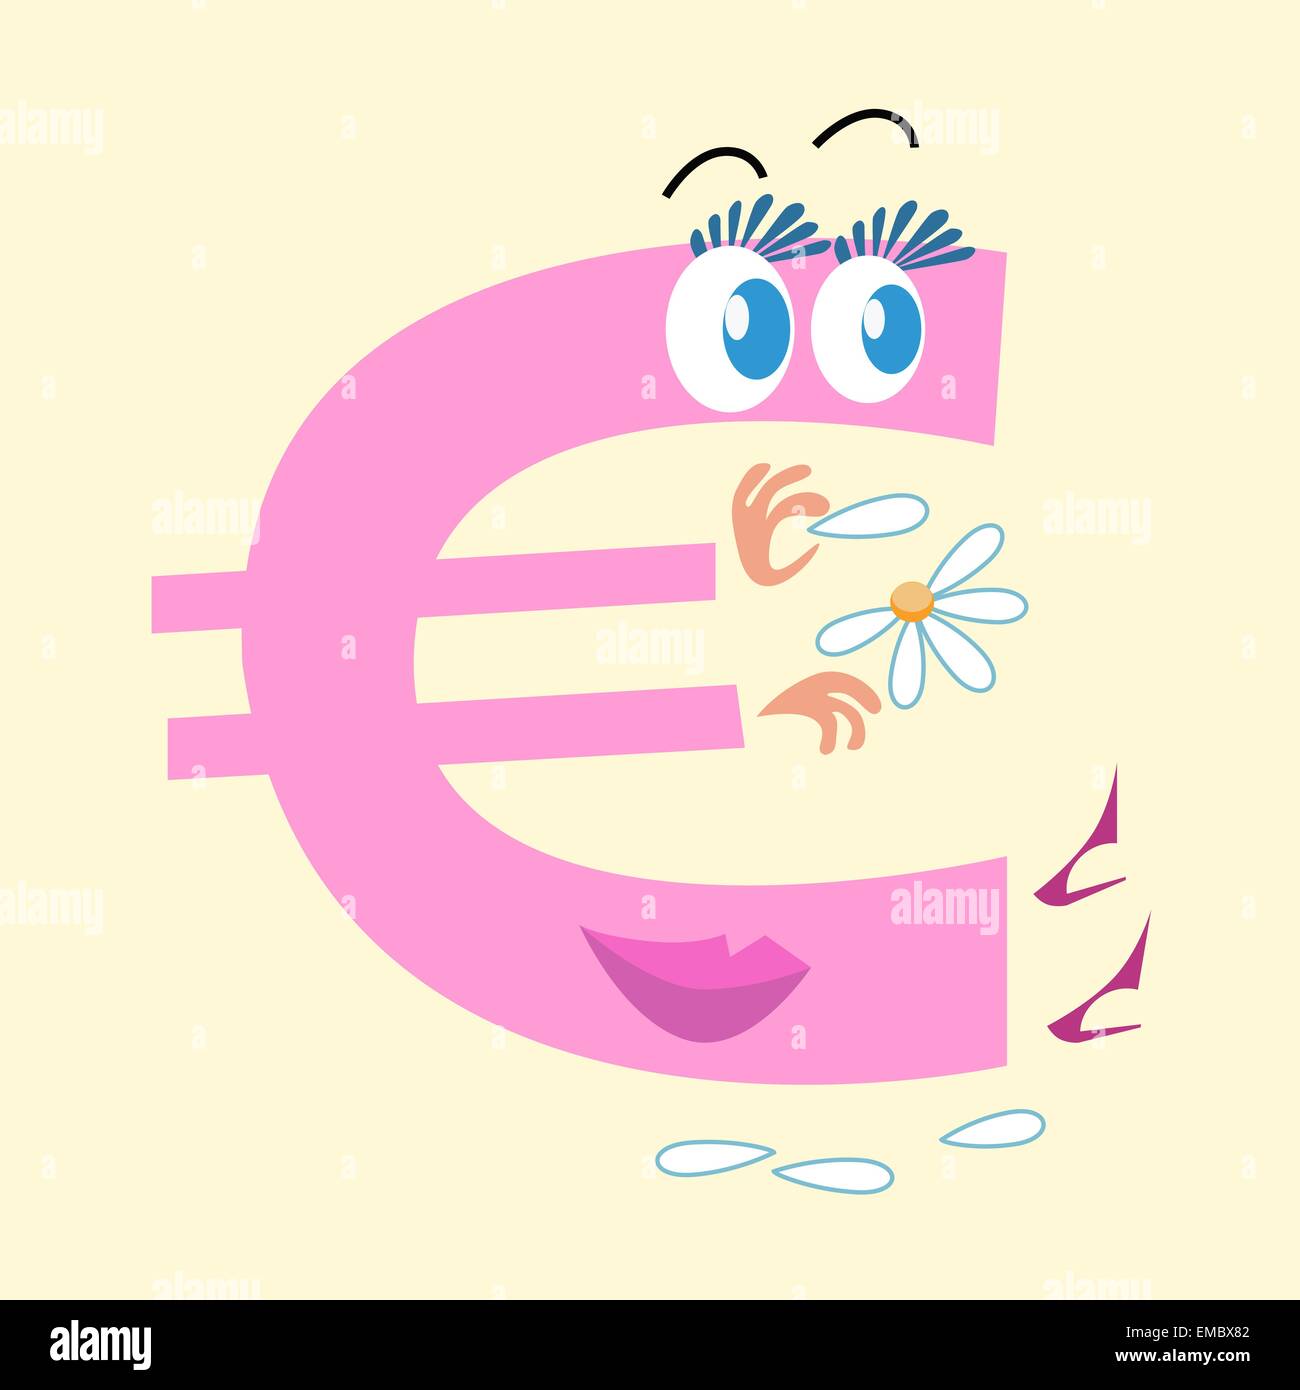 Il simbolo dell'euro è la moneta nazionale dell'Europa. Il carattere del simbolo dell'euro si interroga sul collegamento daisy amore lui o non. Azienda Illustrazione Vettoriale